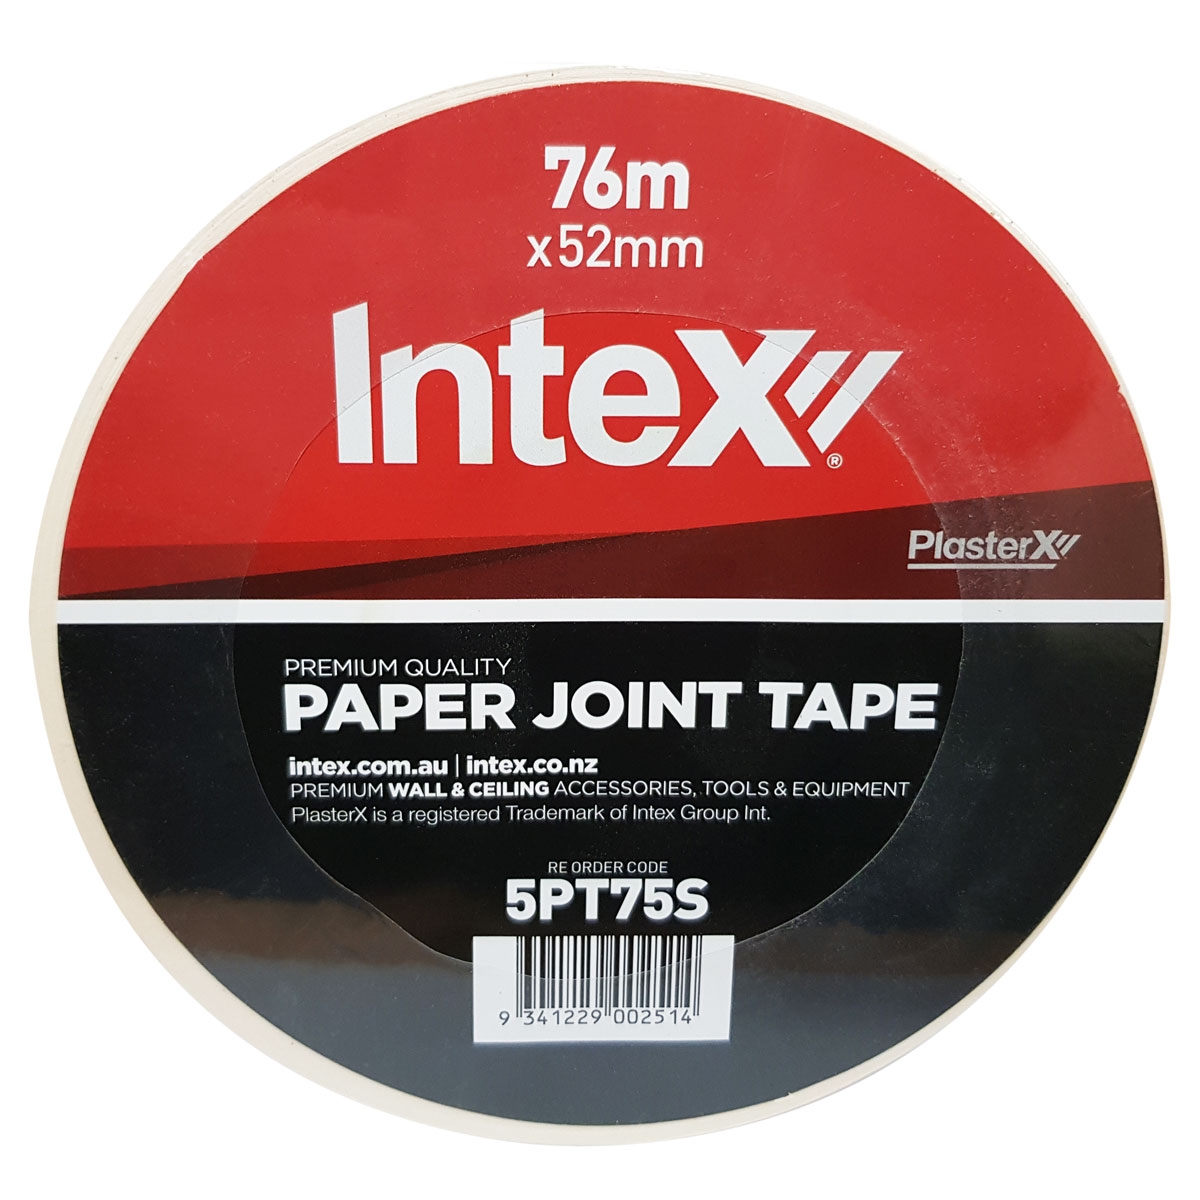 PlasterX Paper Tape 75m